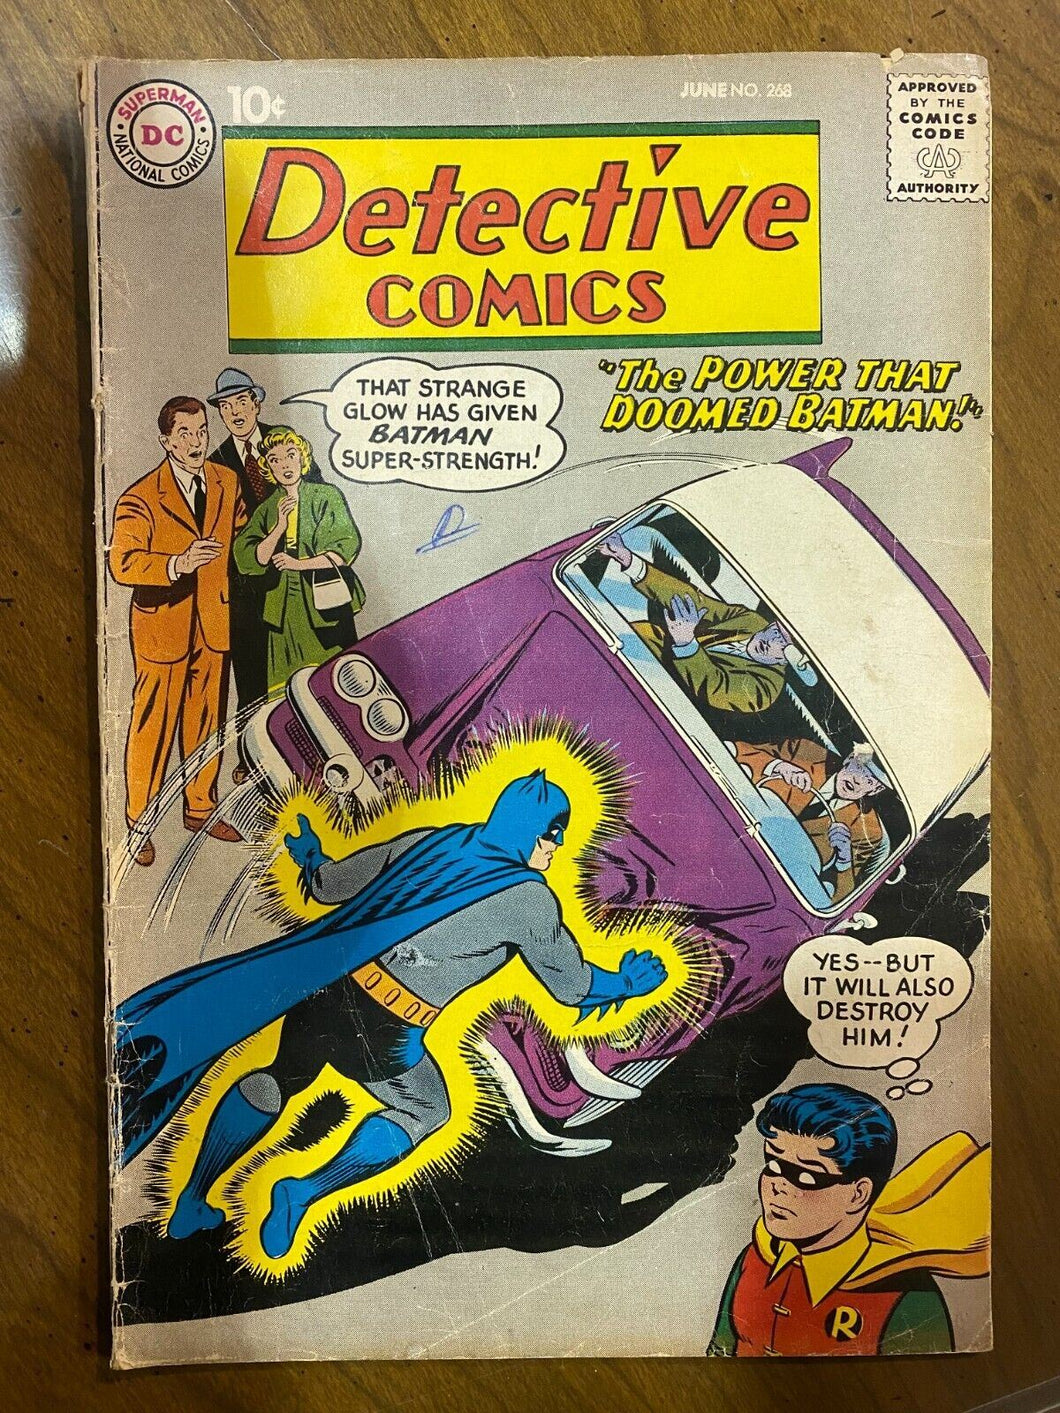 1959 June Detective Comics Vol 1 Issue 268